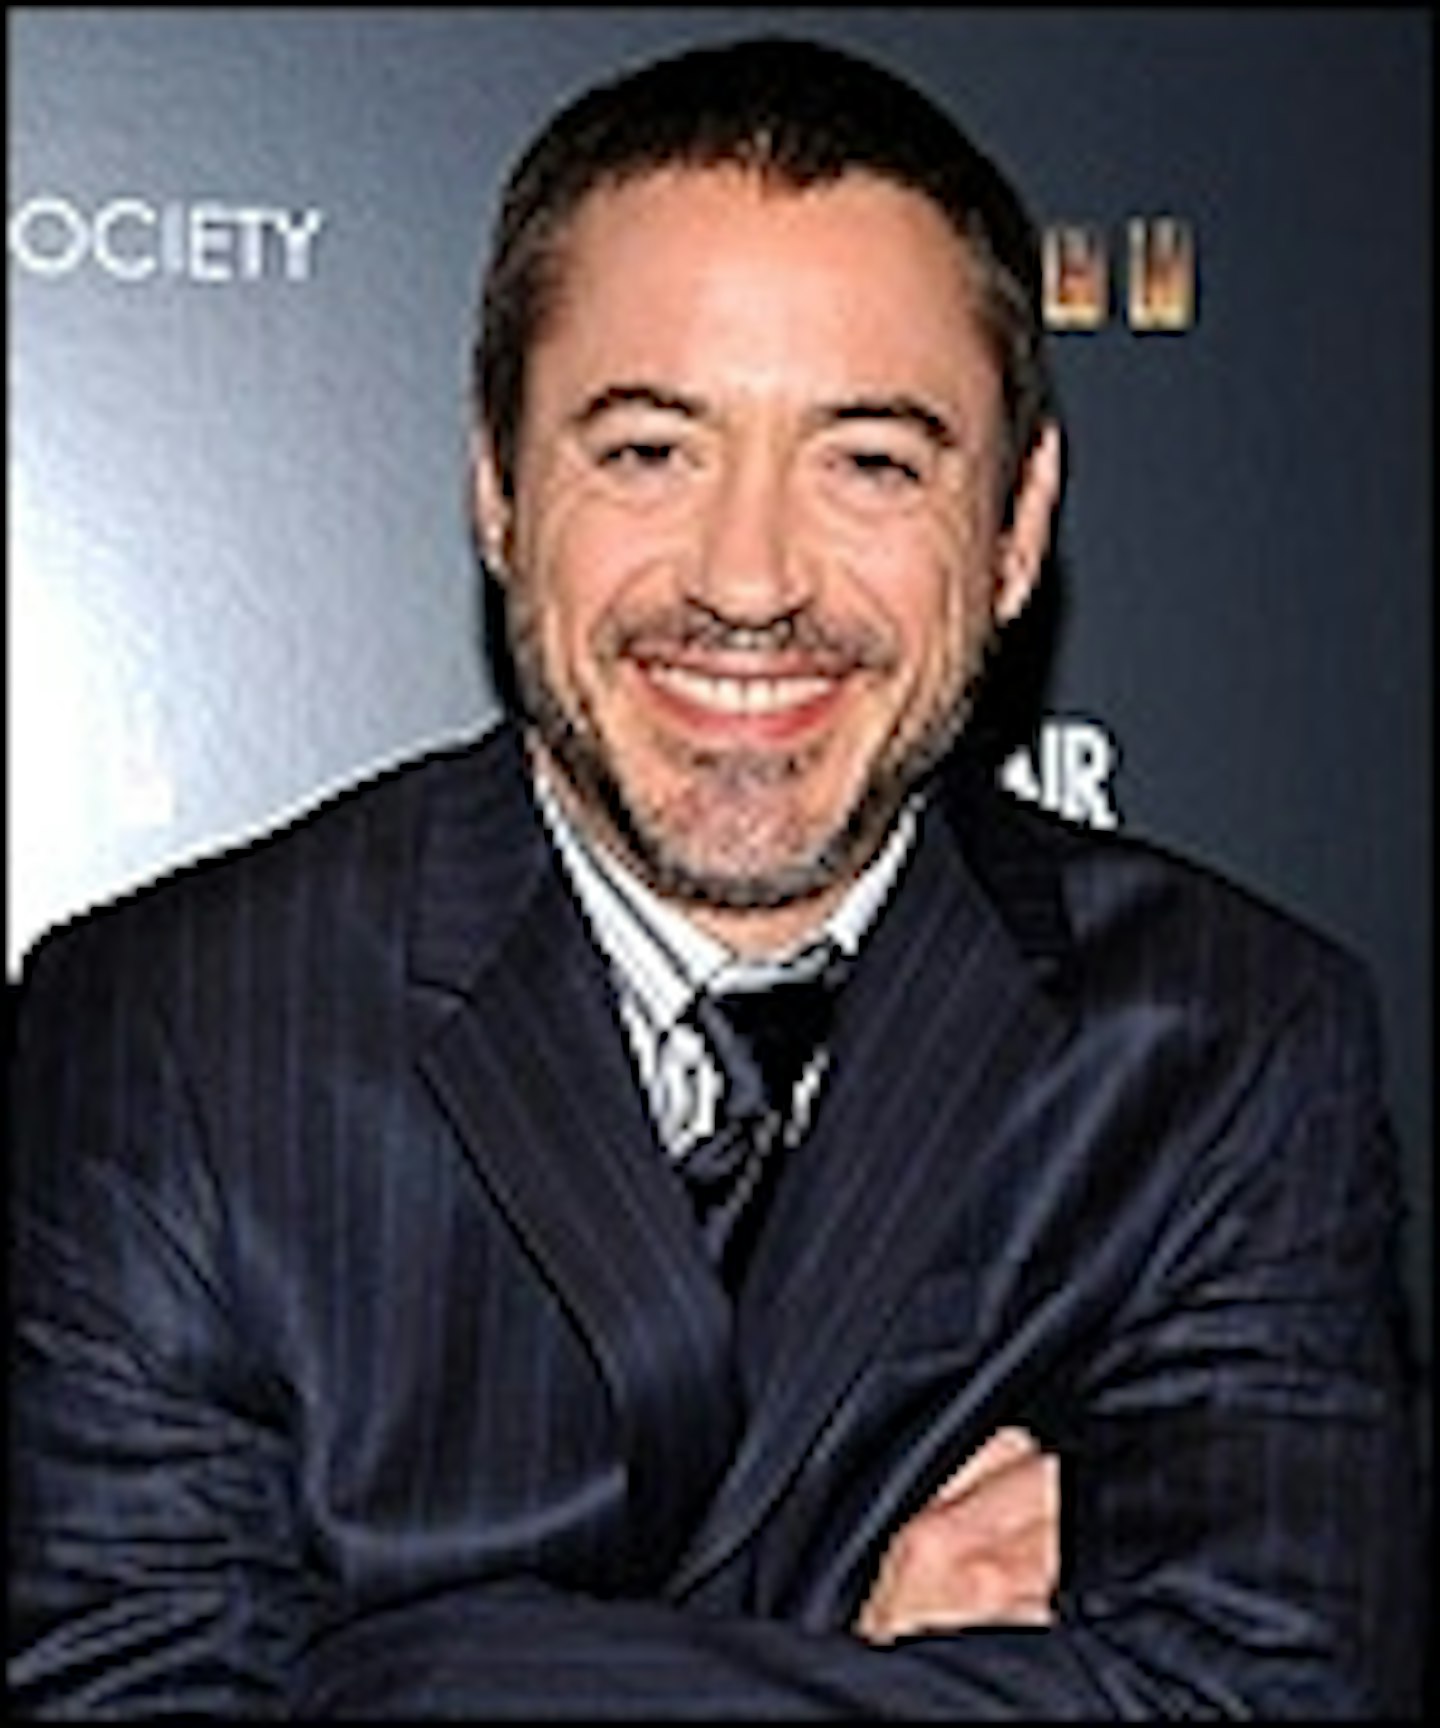 Robert Downey Jr. Producing Presidential Debate Pic